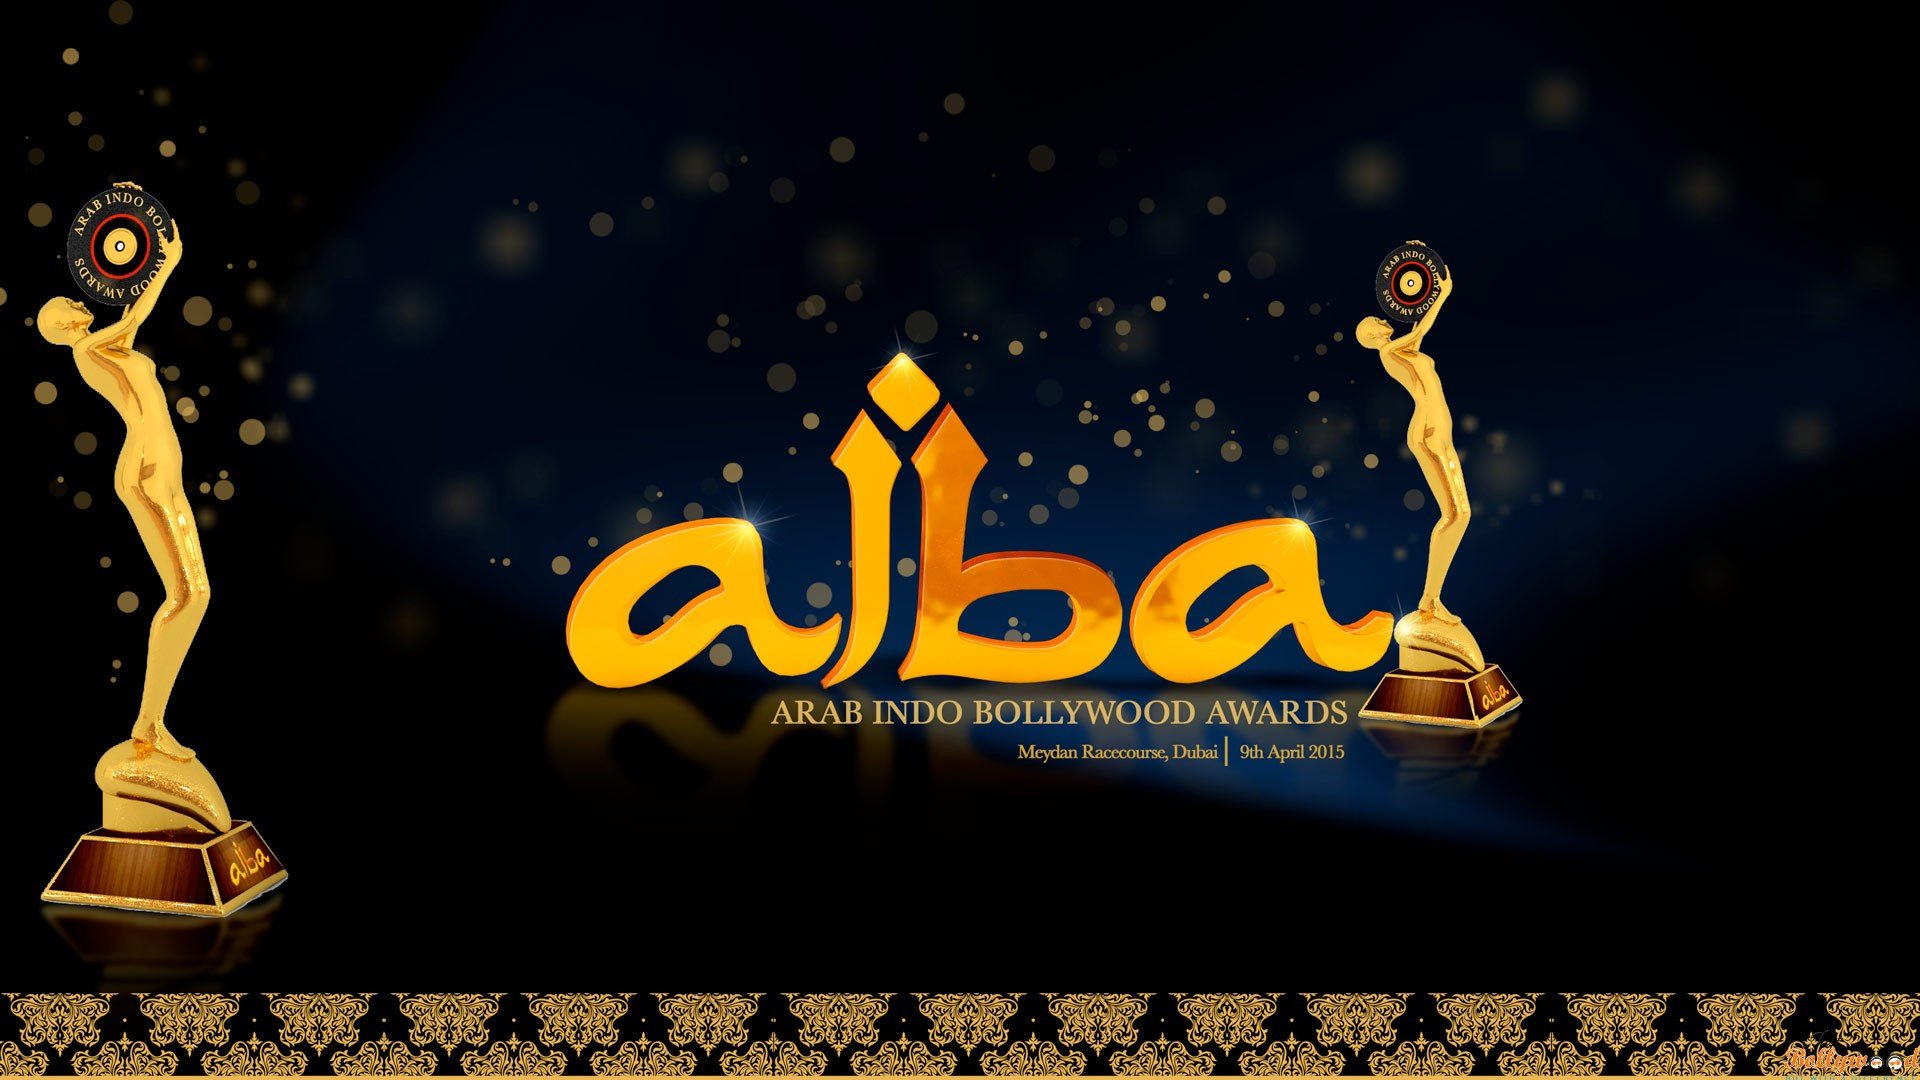 AIBA AWARDS 2015